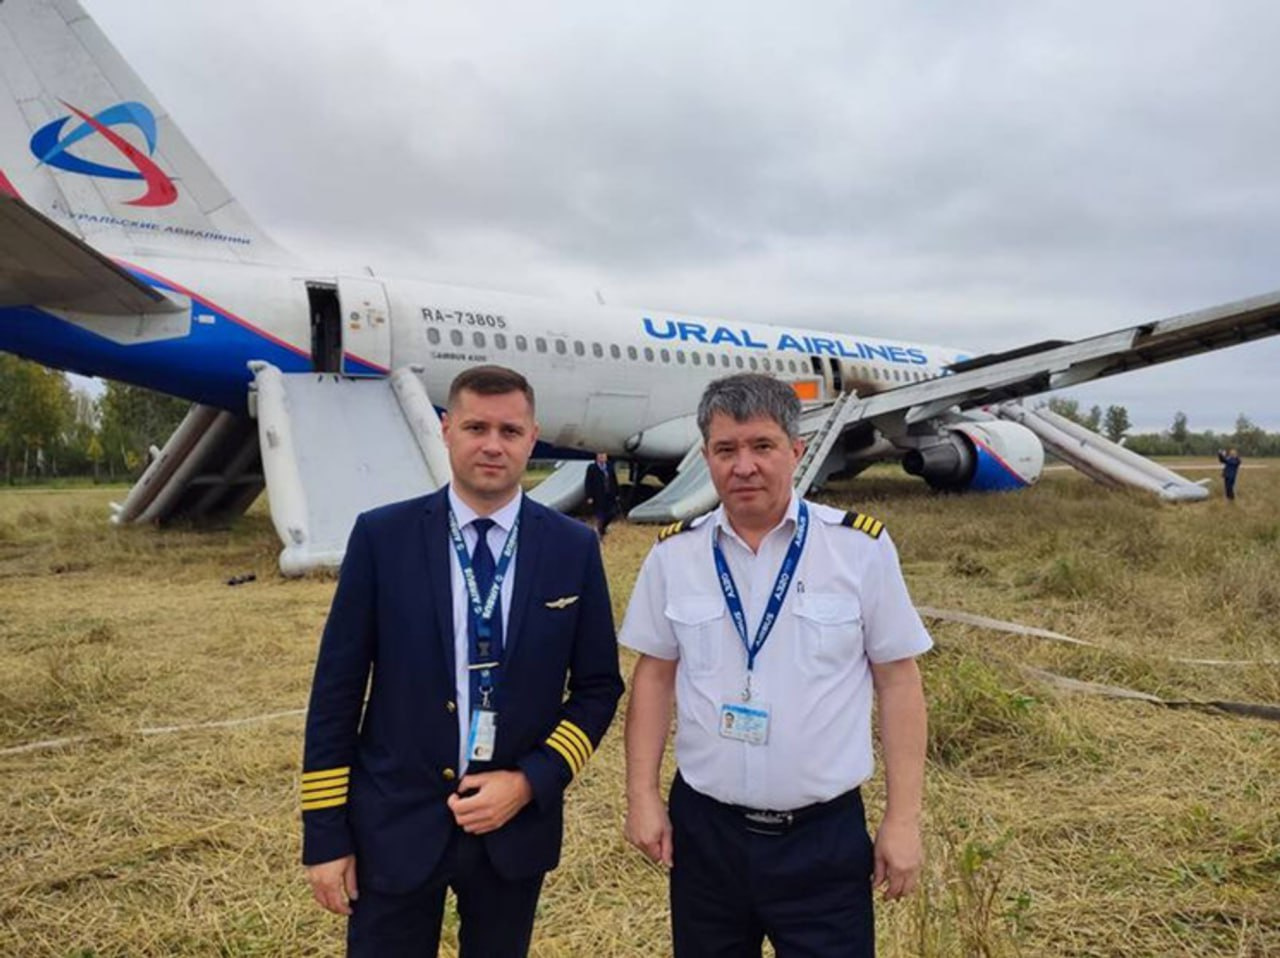 Командир, который посадил самолет в поле, уволился из «Уральских авиалиний»